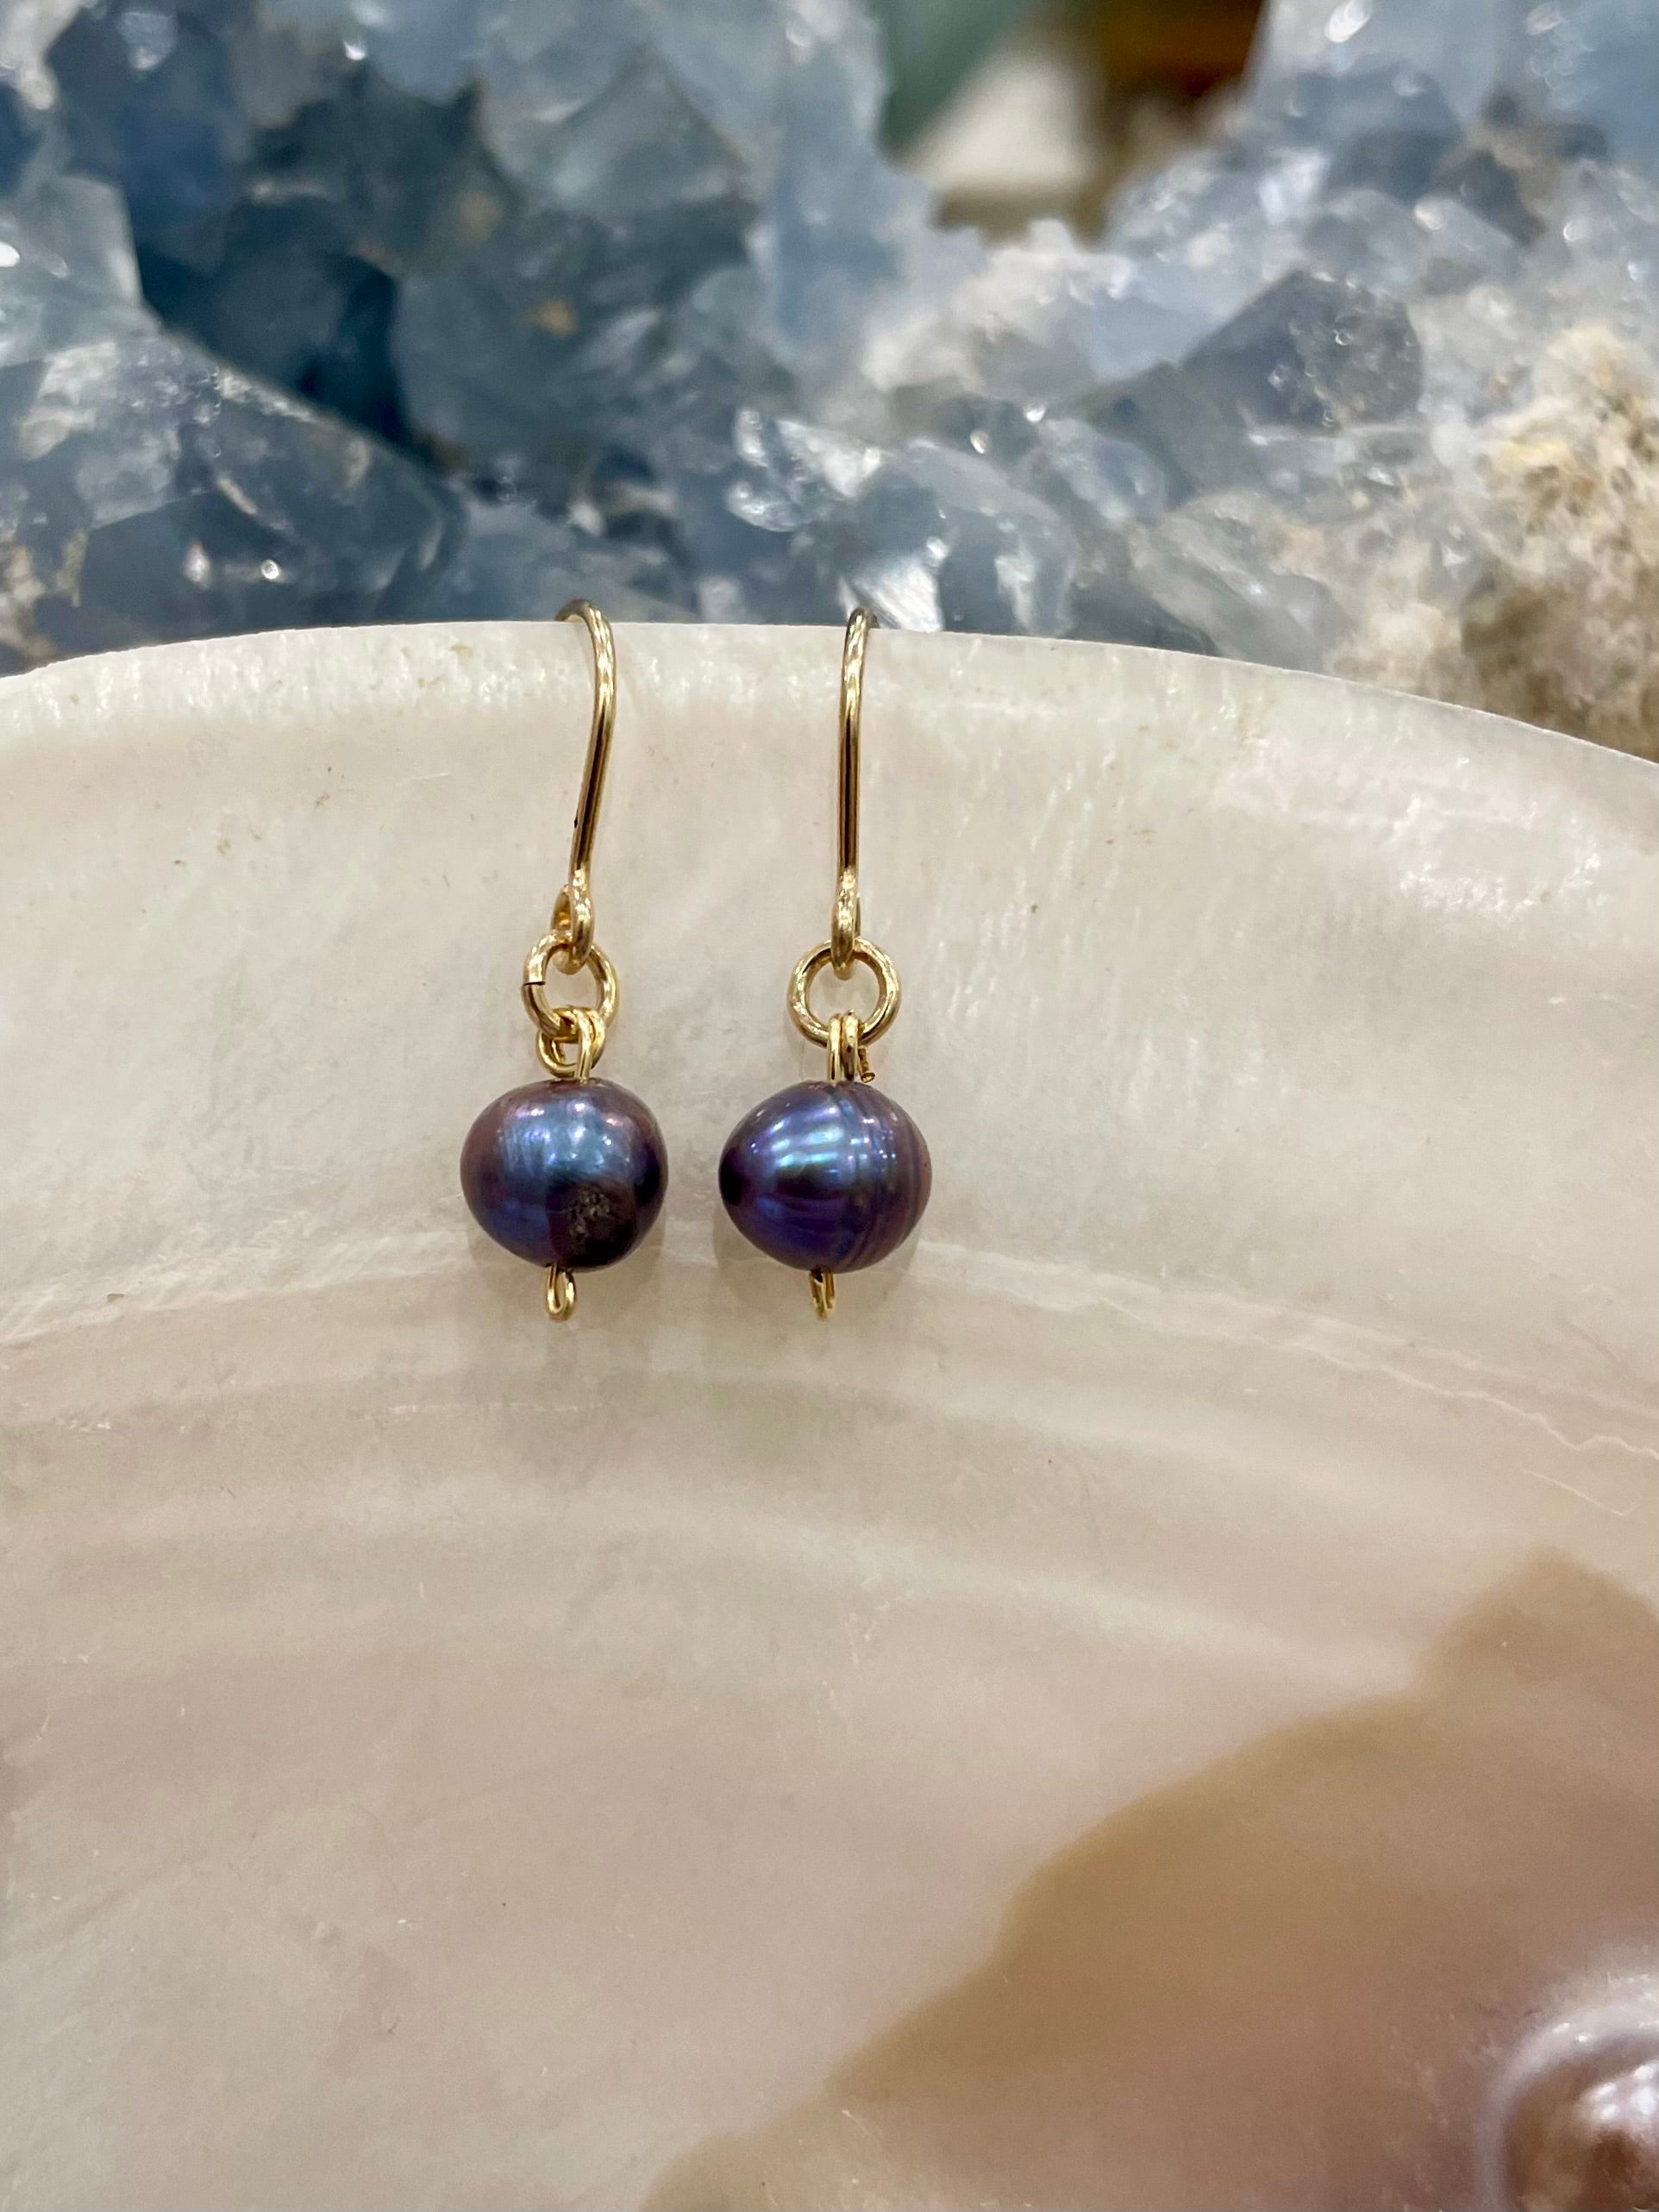 Mini gemstone hook earrings, black pearl earrings, black freshwater pearl earrings in gold